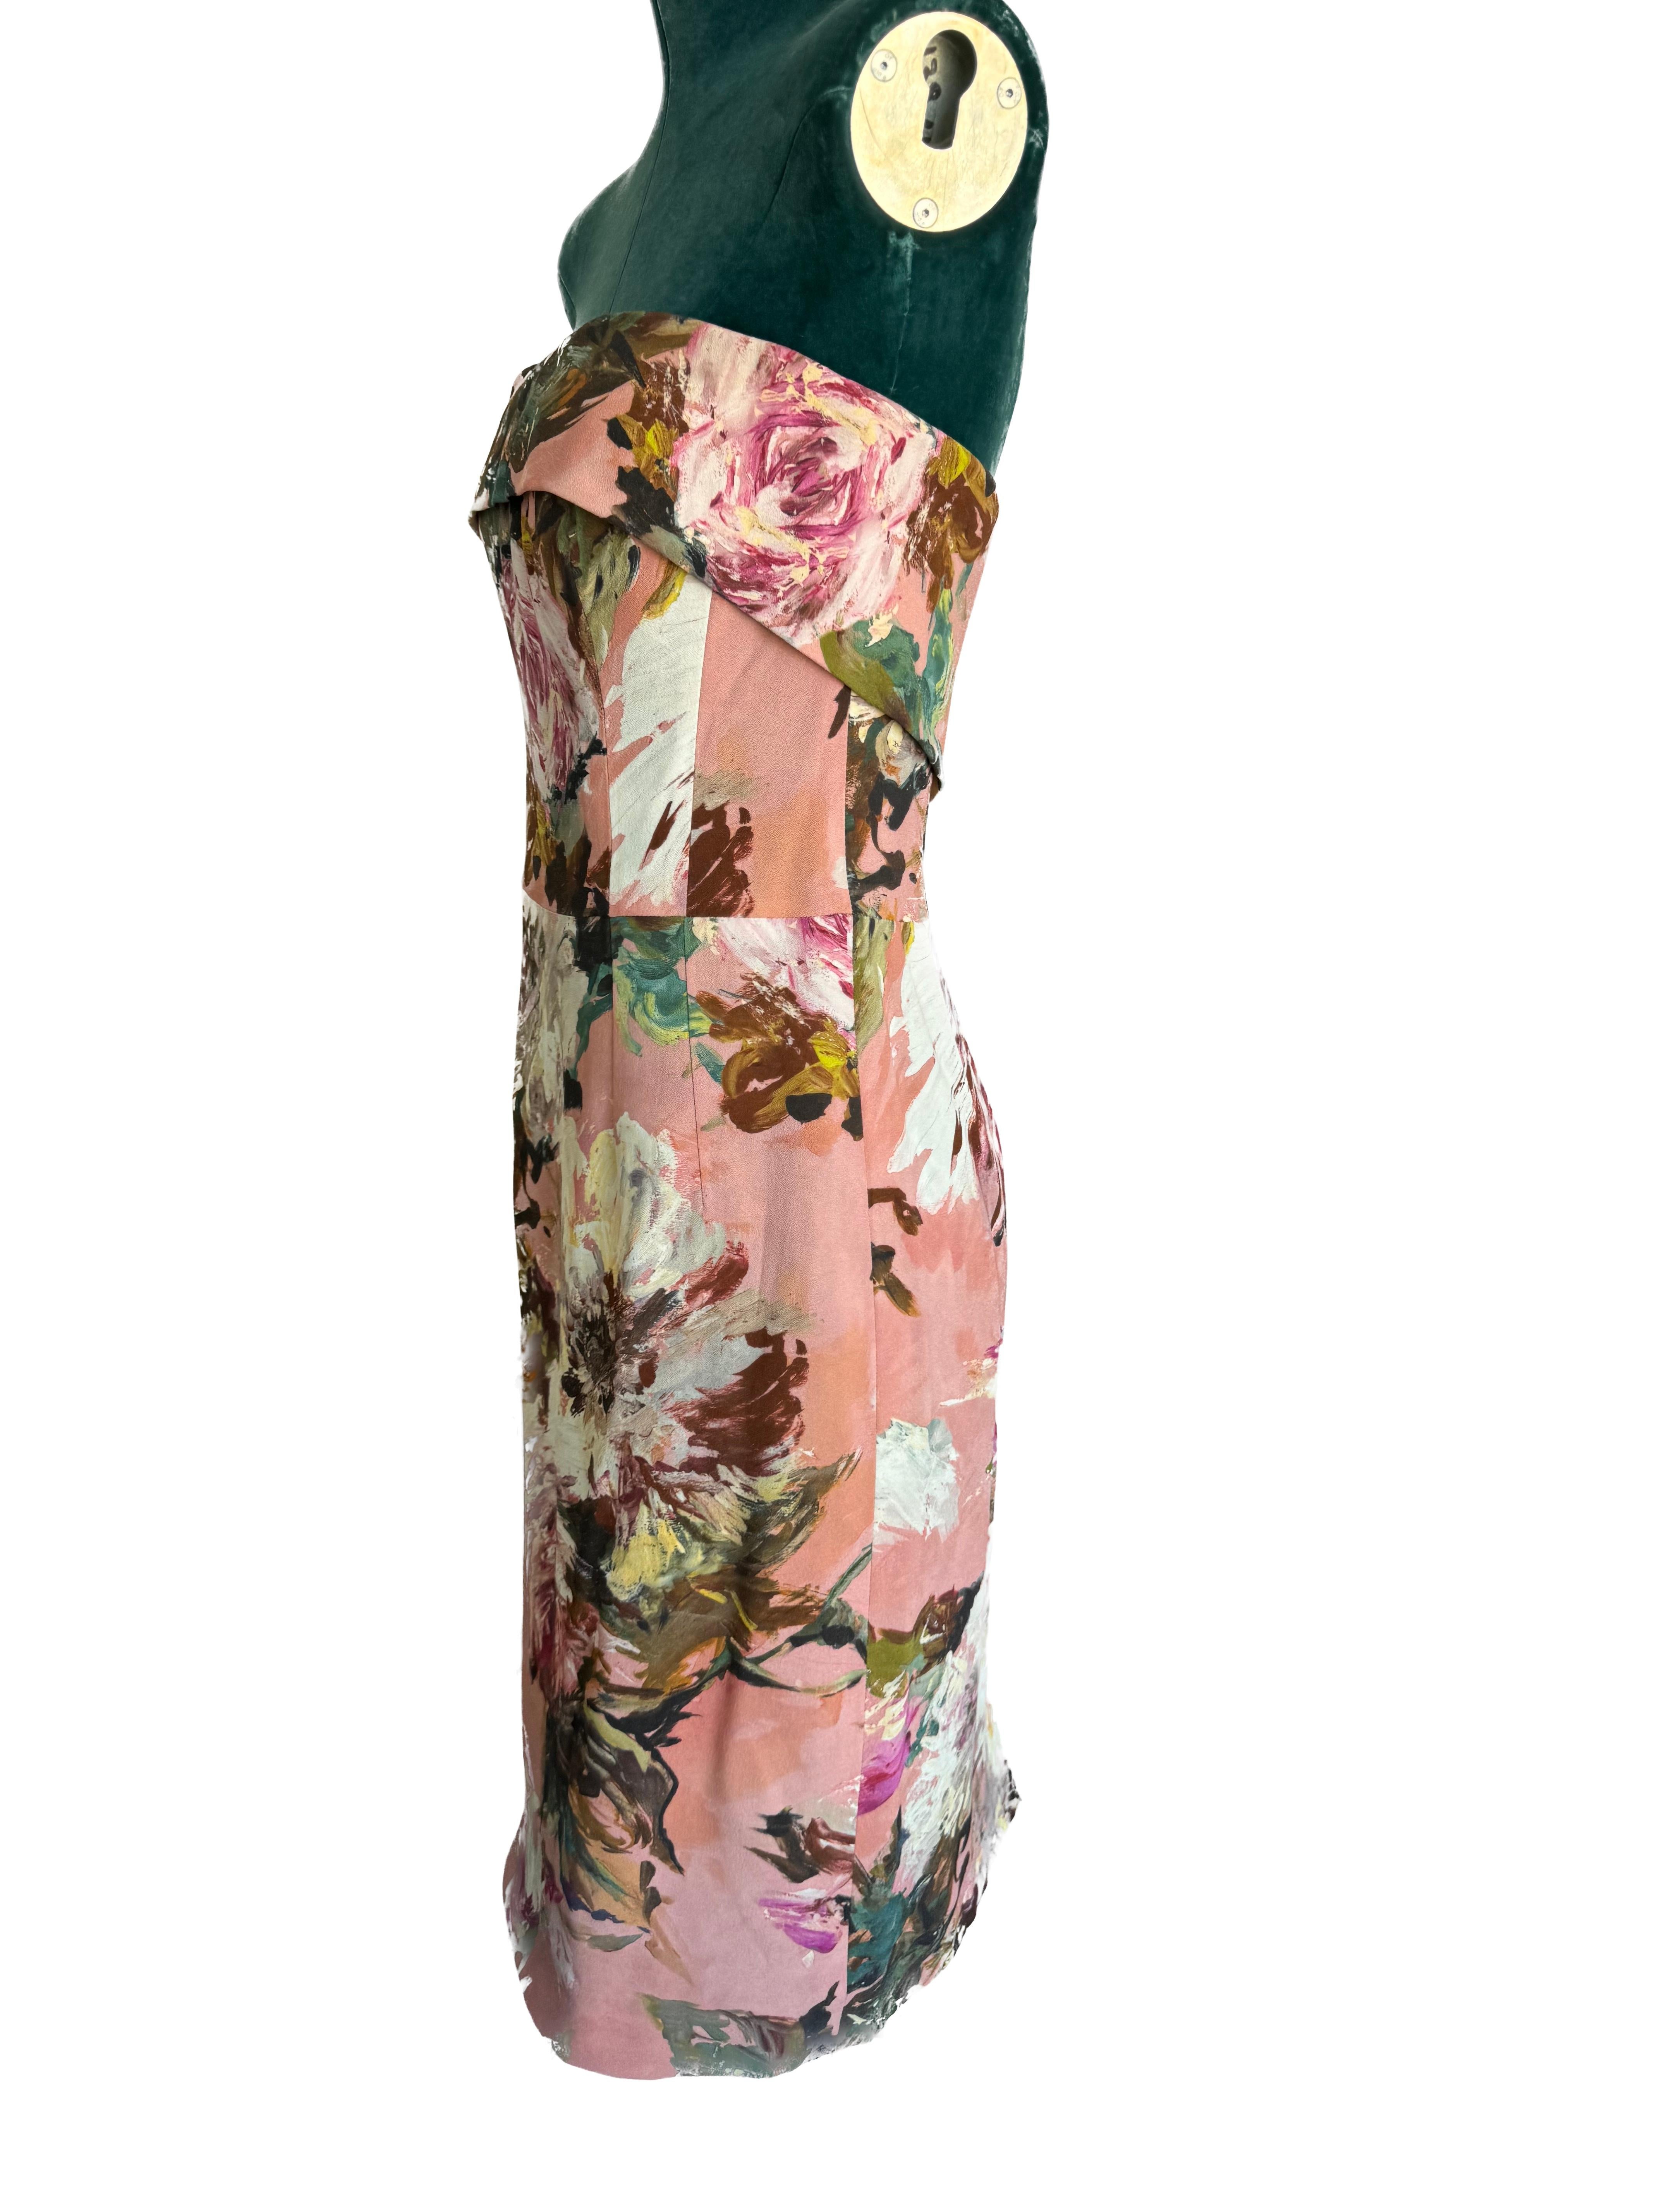 
ChatGPT
Laissez-vous séduire par l'incarnation de la féminité opulente de Dolce & Gabbana avec cette exquise robe florale ajustée sans bretelles, dont chaque détail raconte une histoire de luxe et de sophistication. Cet ensemble captivant marie